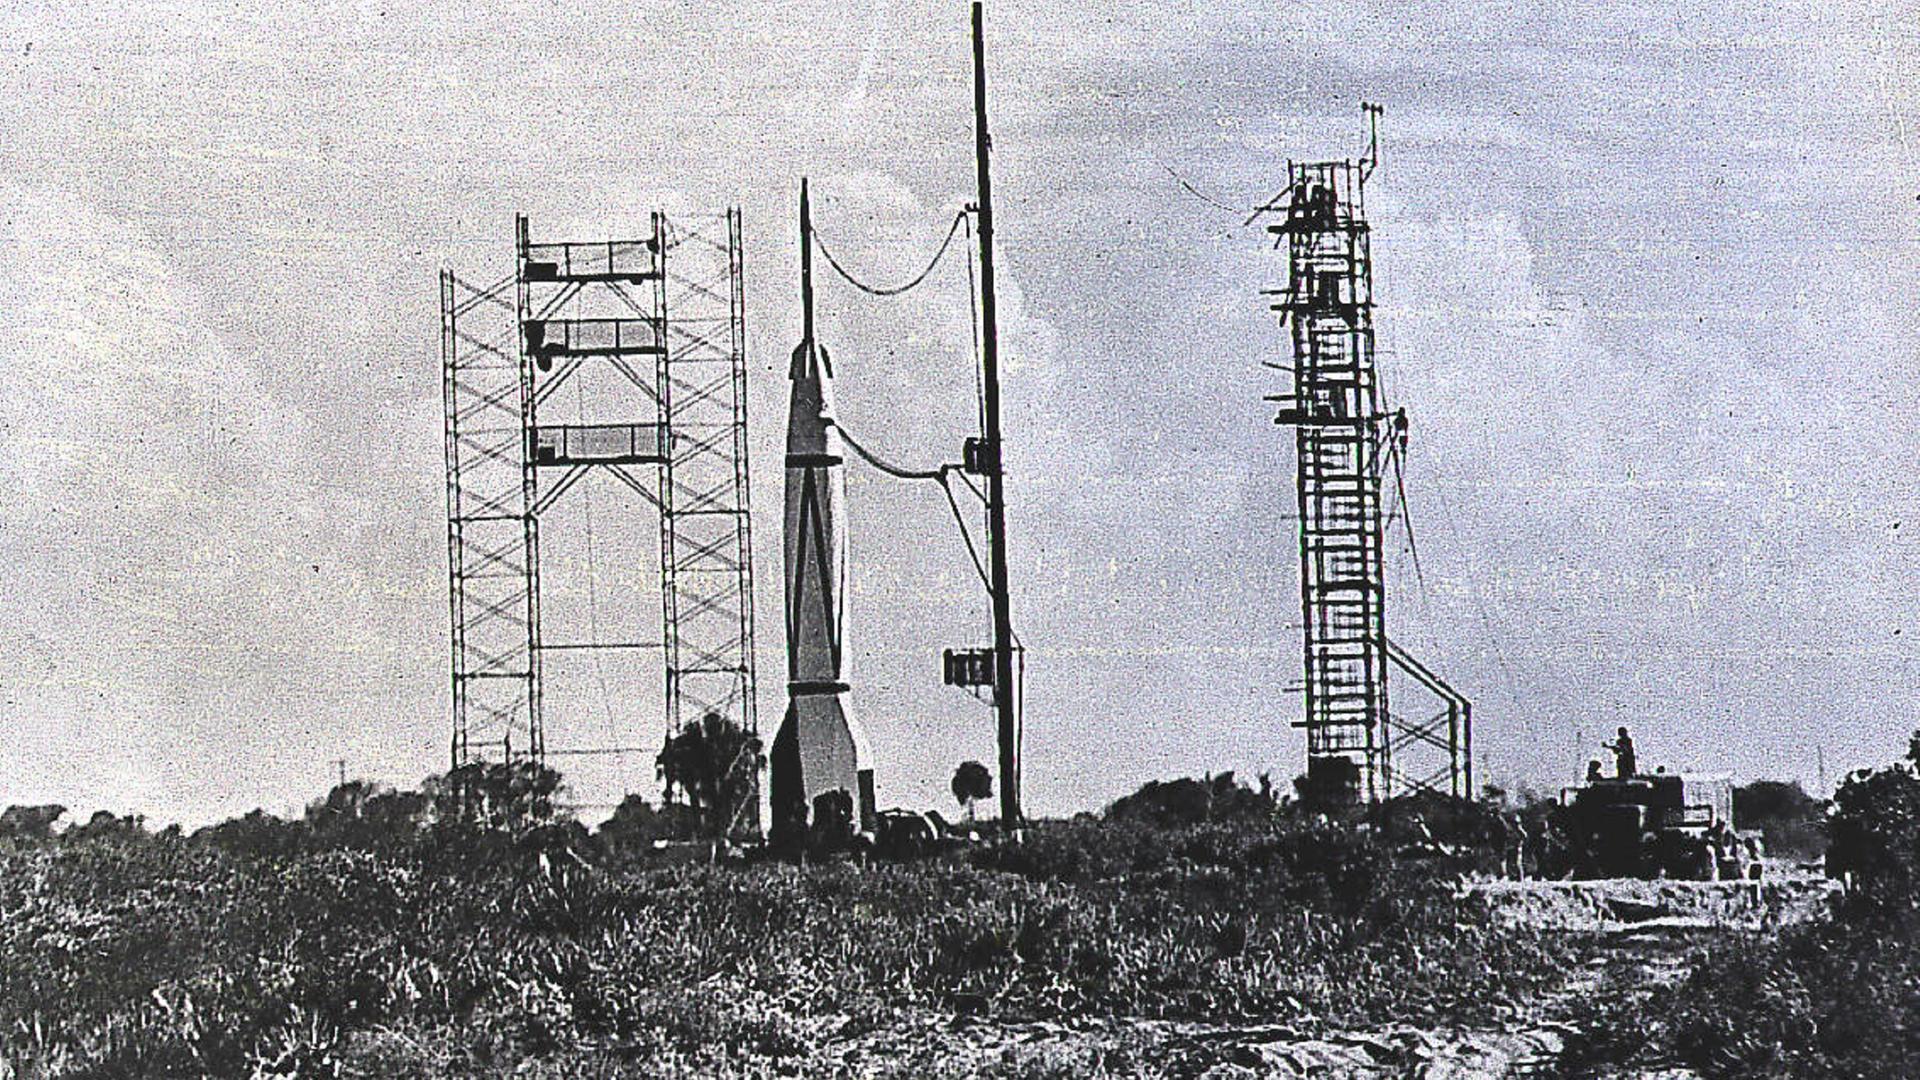 Eine Schwarz-Weiß Fotografie der Rakete, die sich in der Luft befindet.